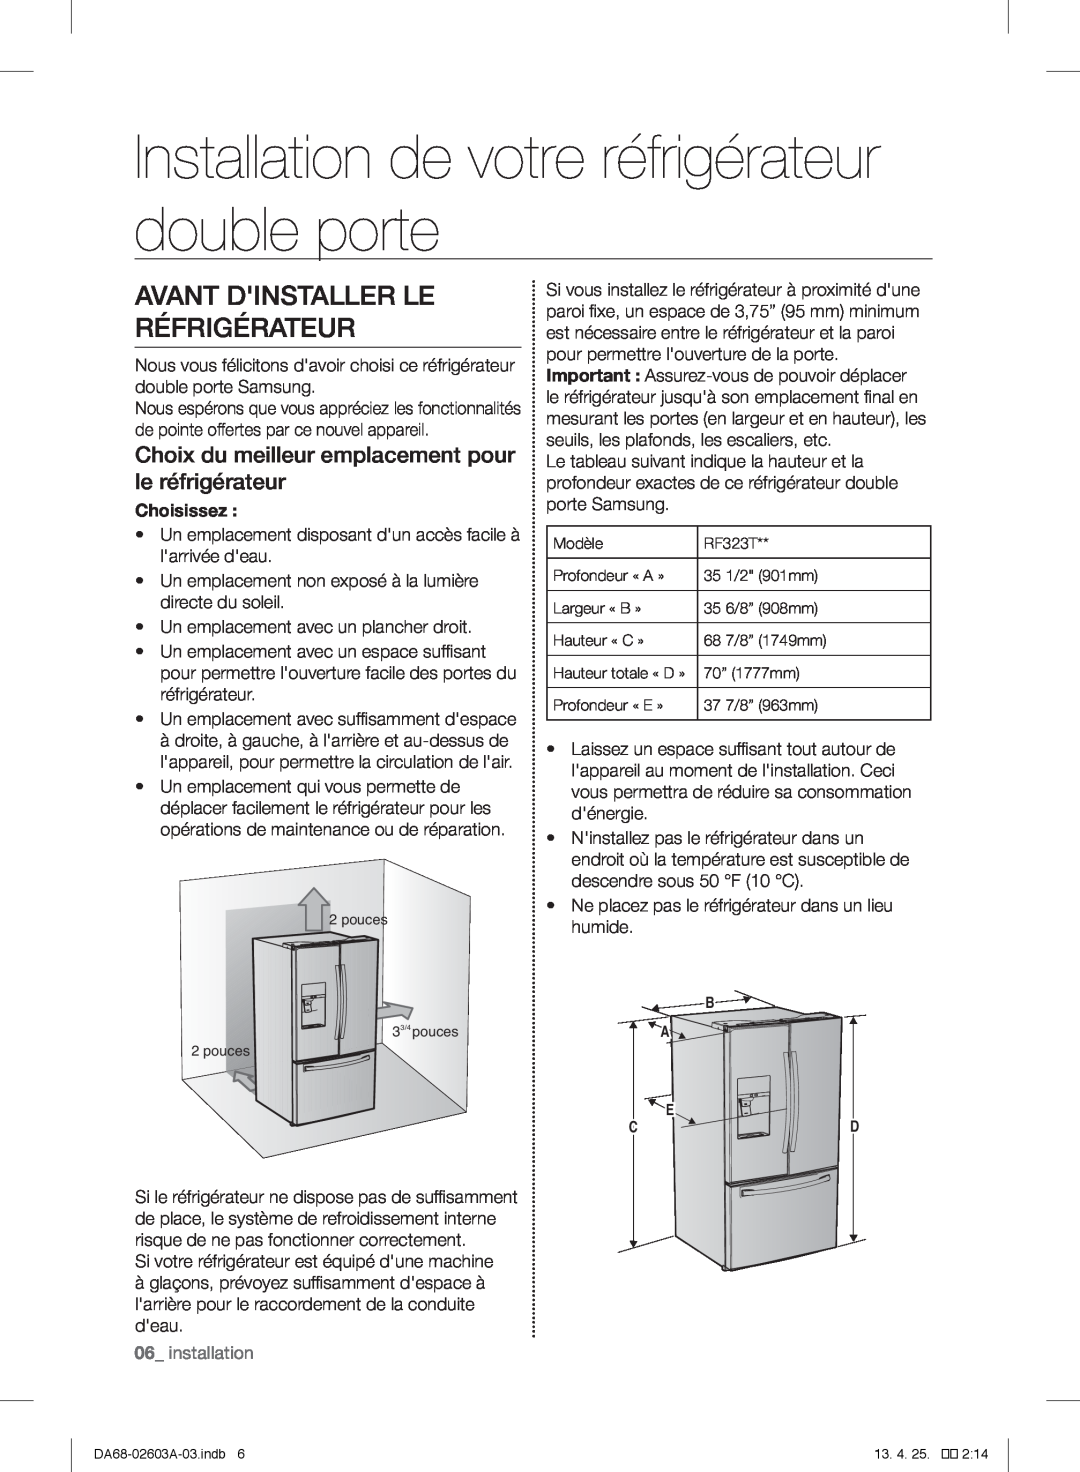 Samsung RF323TEDBBC Installation de votre réfrigérateur double porte, Avant Dinstaller Le Réfrigérateur, Choisissez 